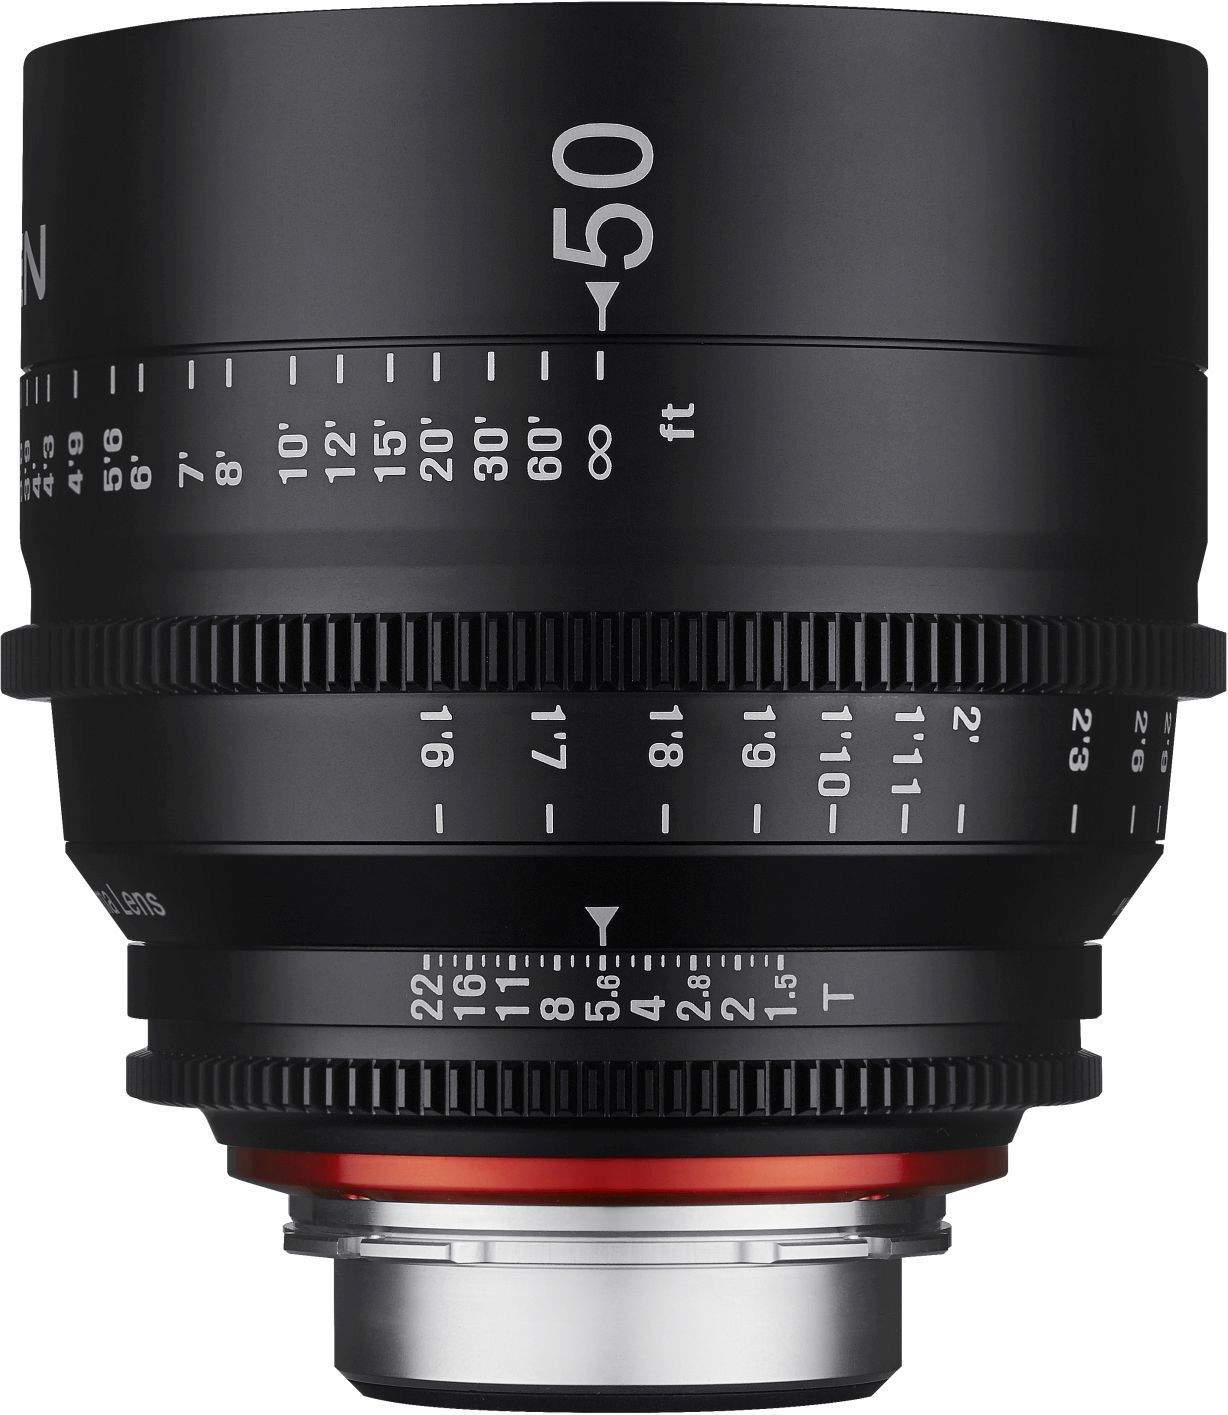 50mm T1.5 XEEN PL Full Frame Cinema Lens